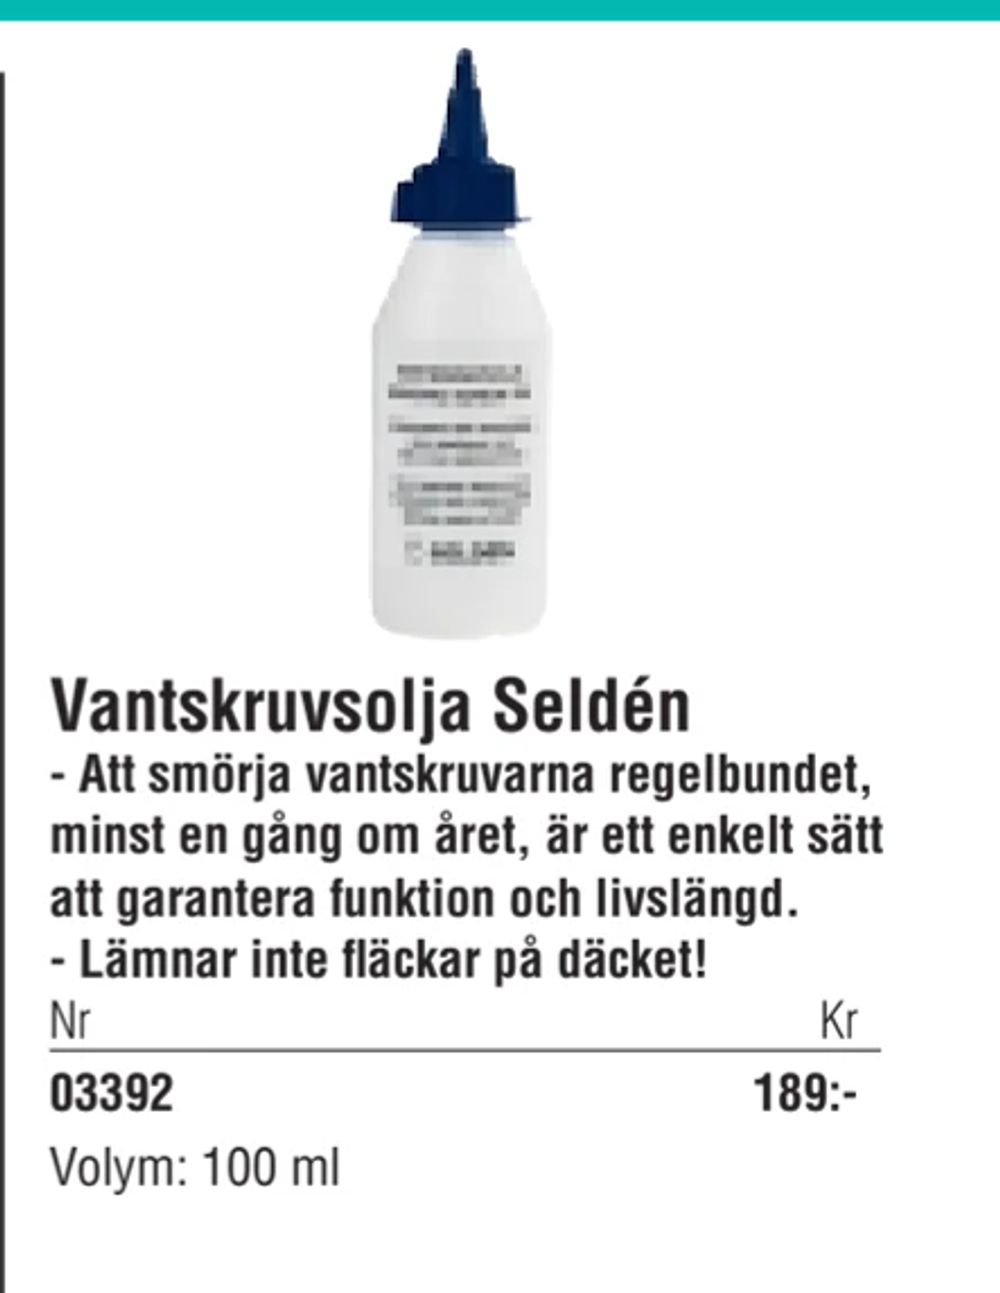 Erbjudanden på Vantskruvsolja Seldén från Erlandsons Brygga för 189 kr